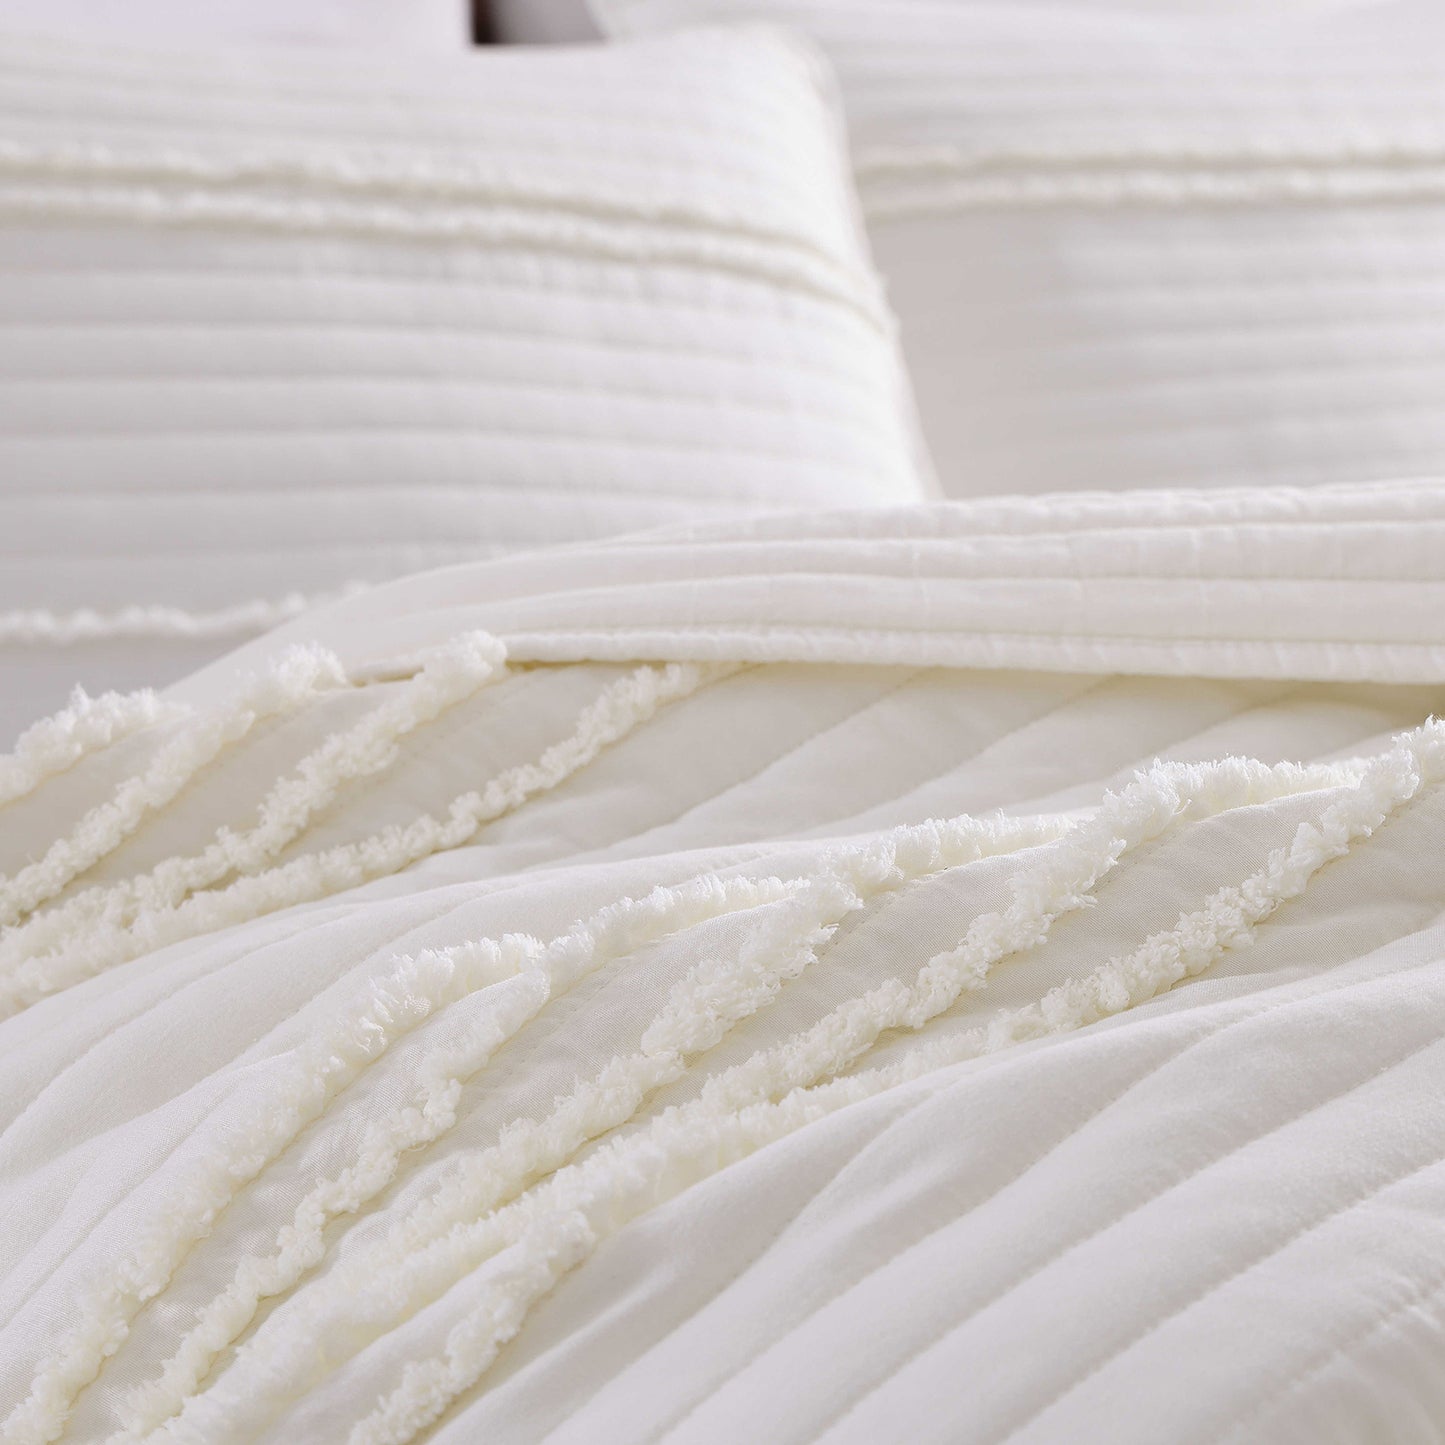 CarsonWorks Quilt Sets Queen Size Modern Boho Bedspreads